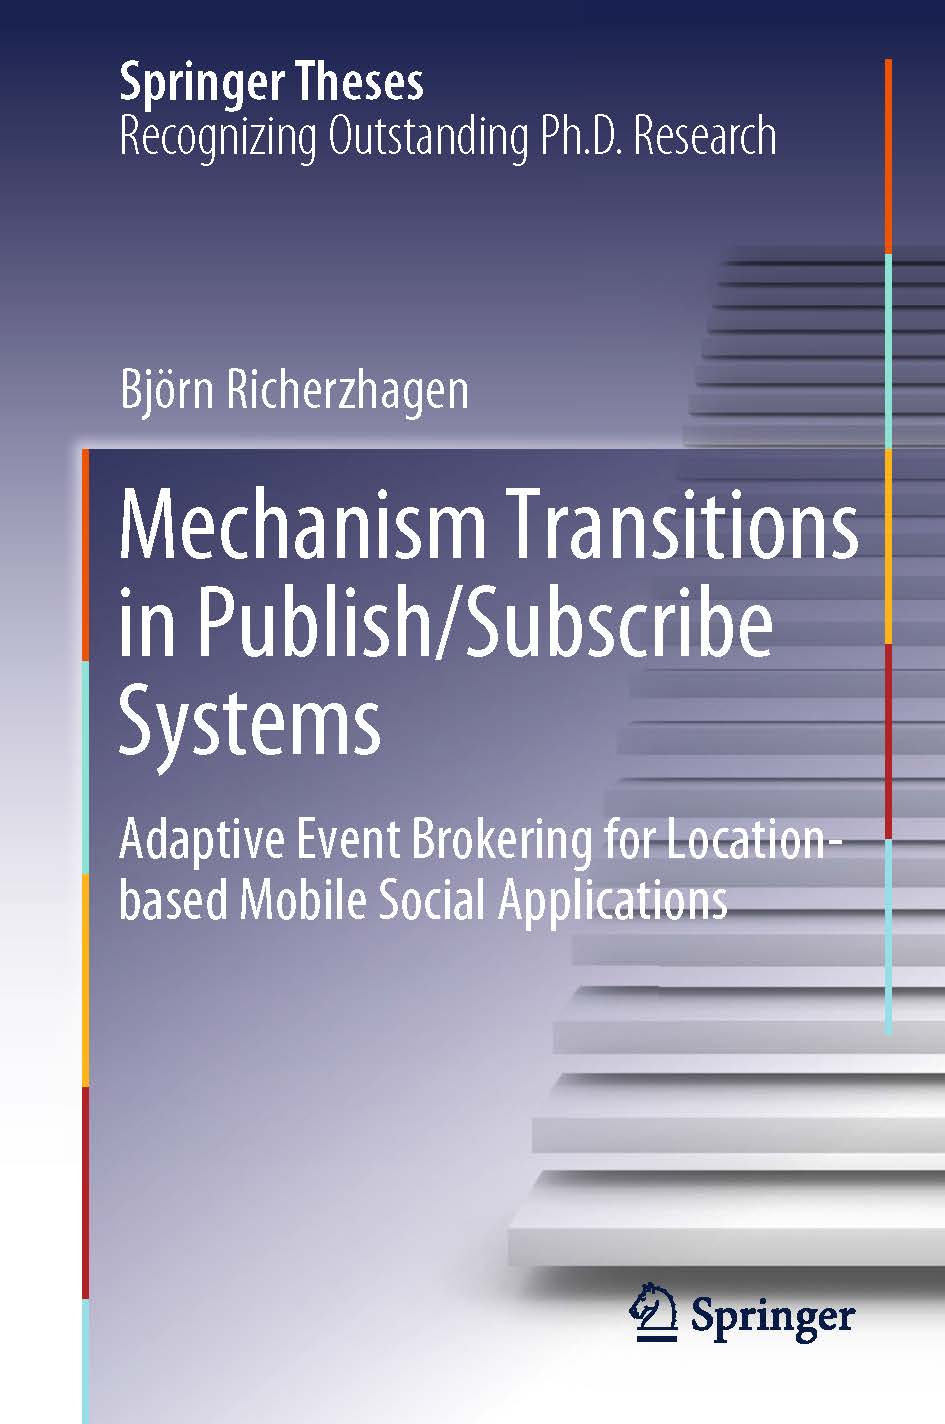 页面提取自－2019_Book_Mechanism Transitions in Publish Subscribe Systems.jpg